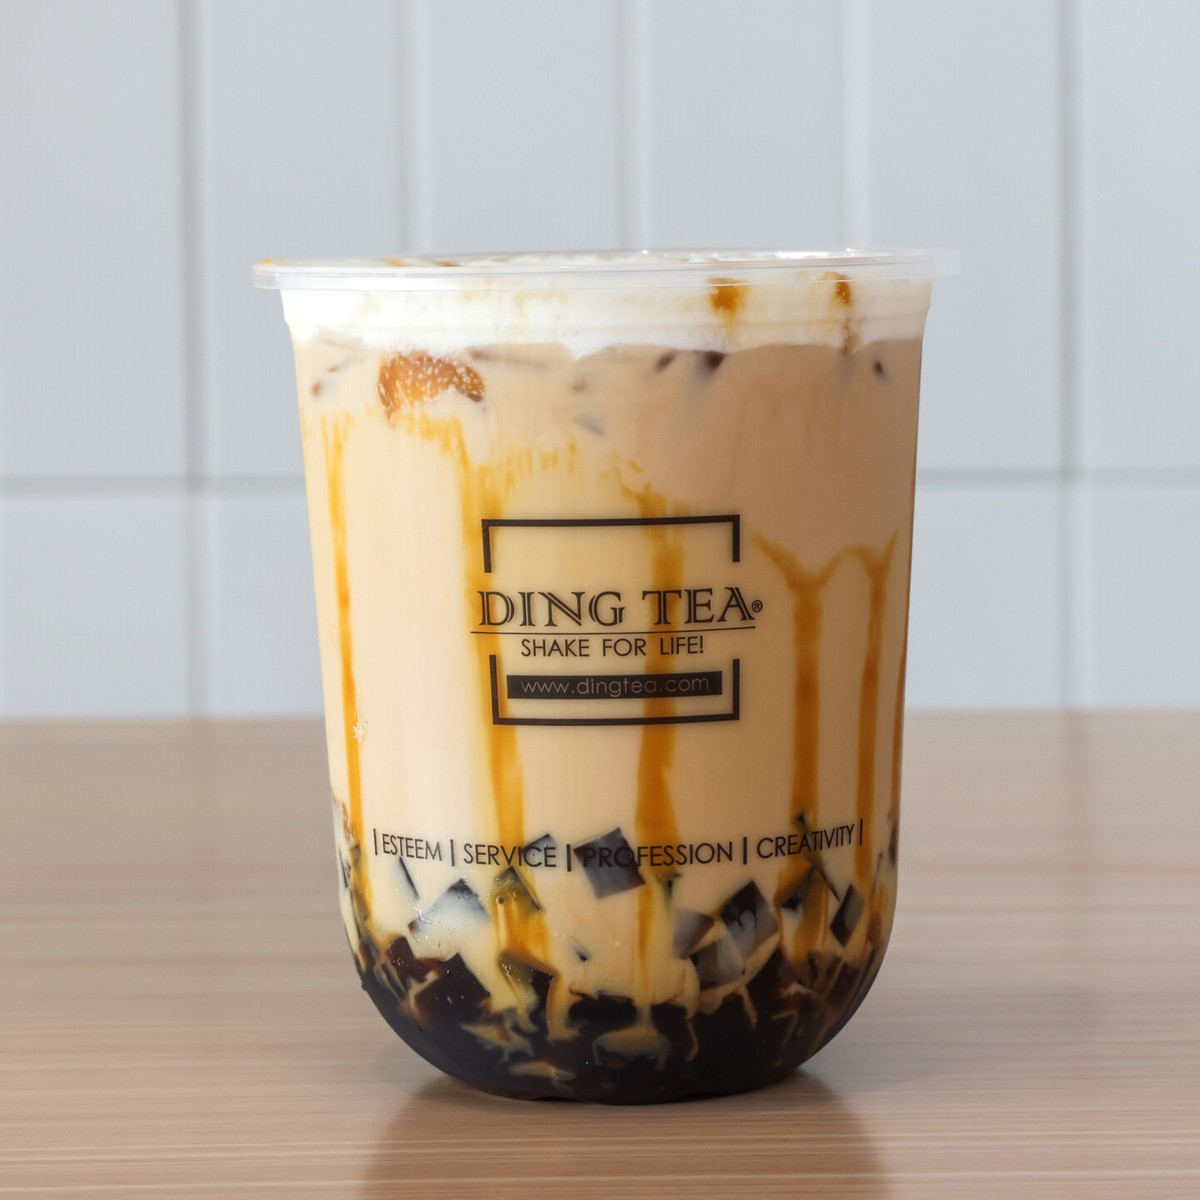 Food Review: Ding Tea – Granite Bay Today